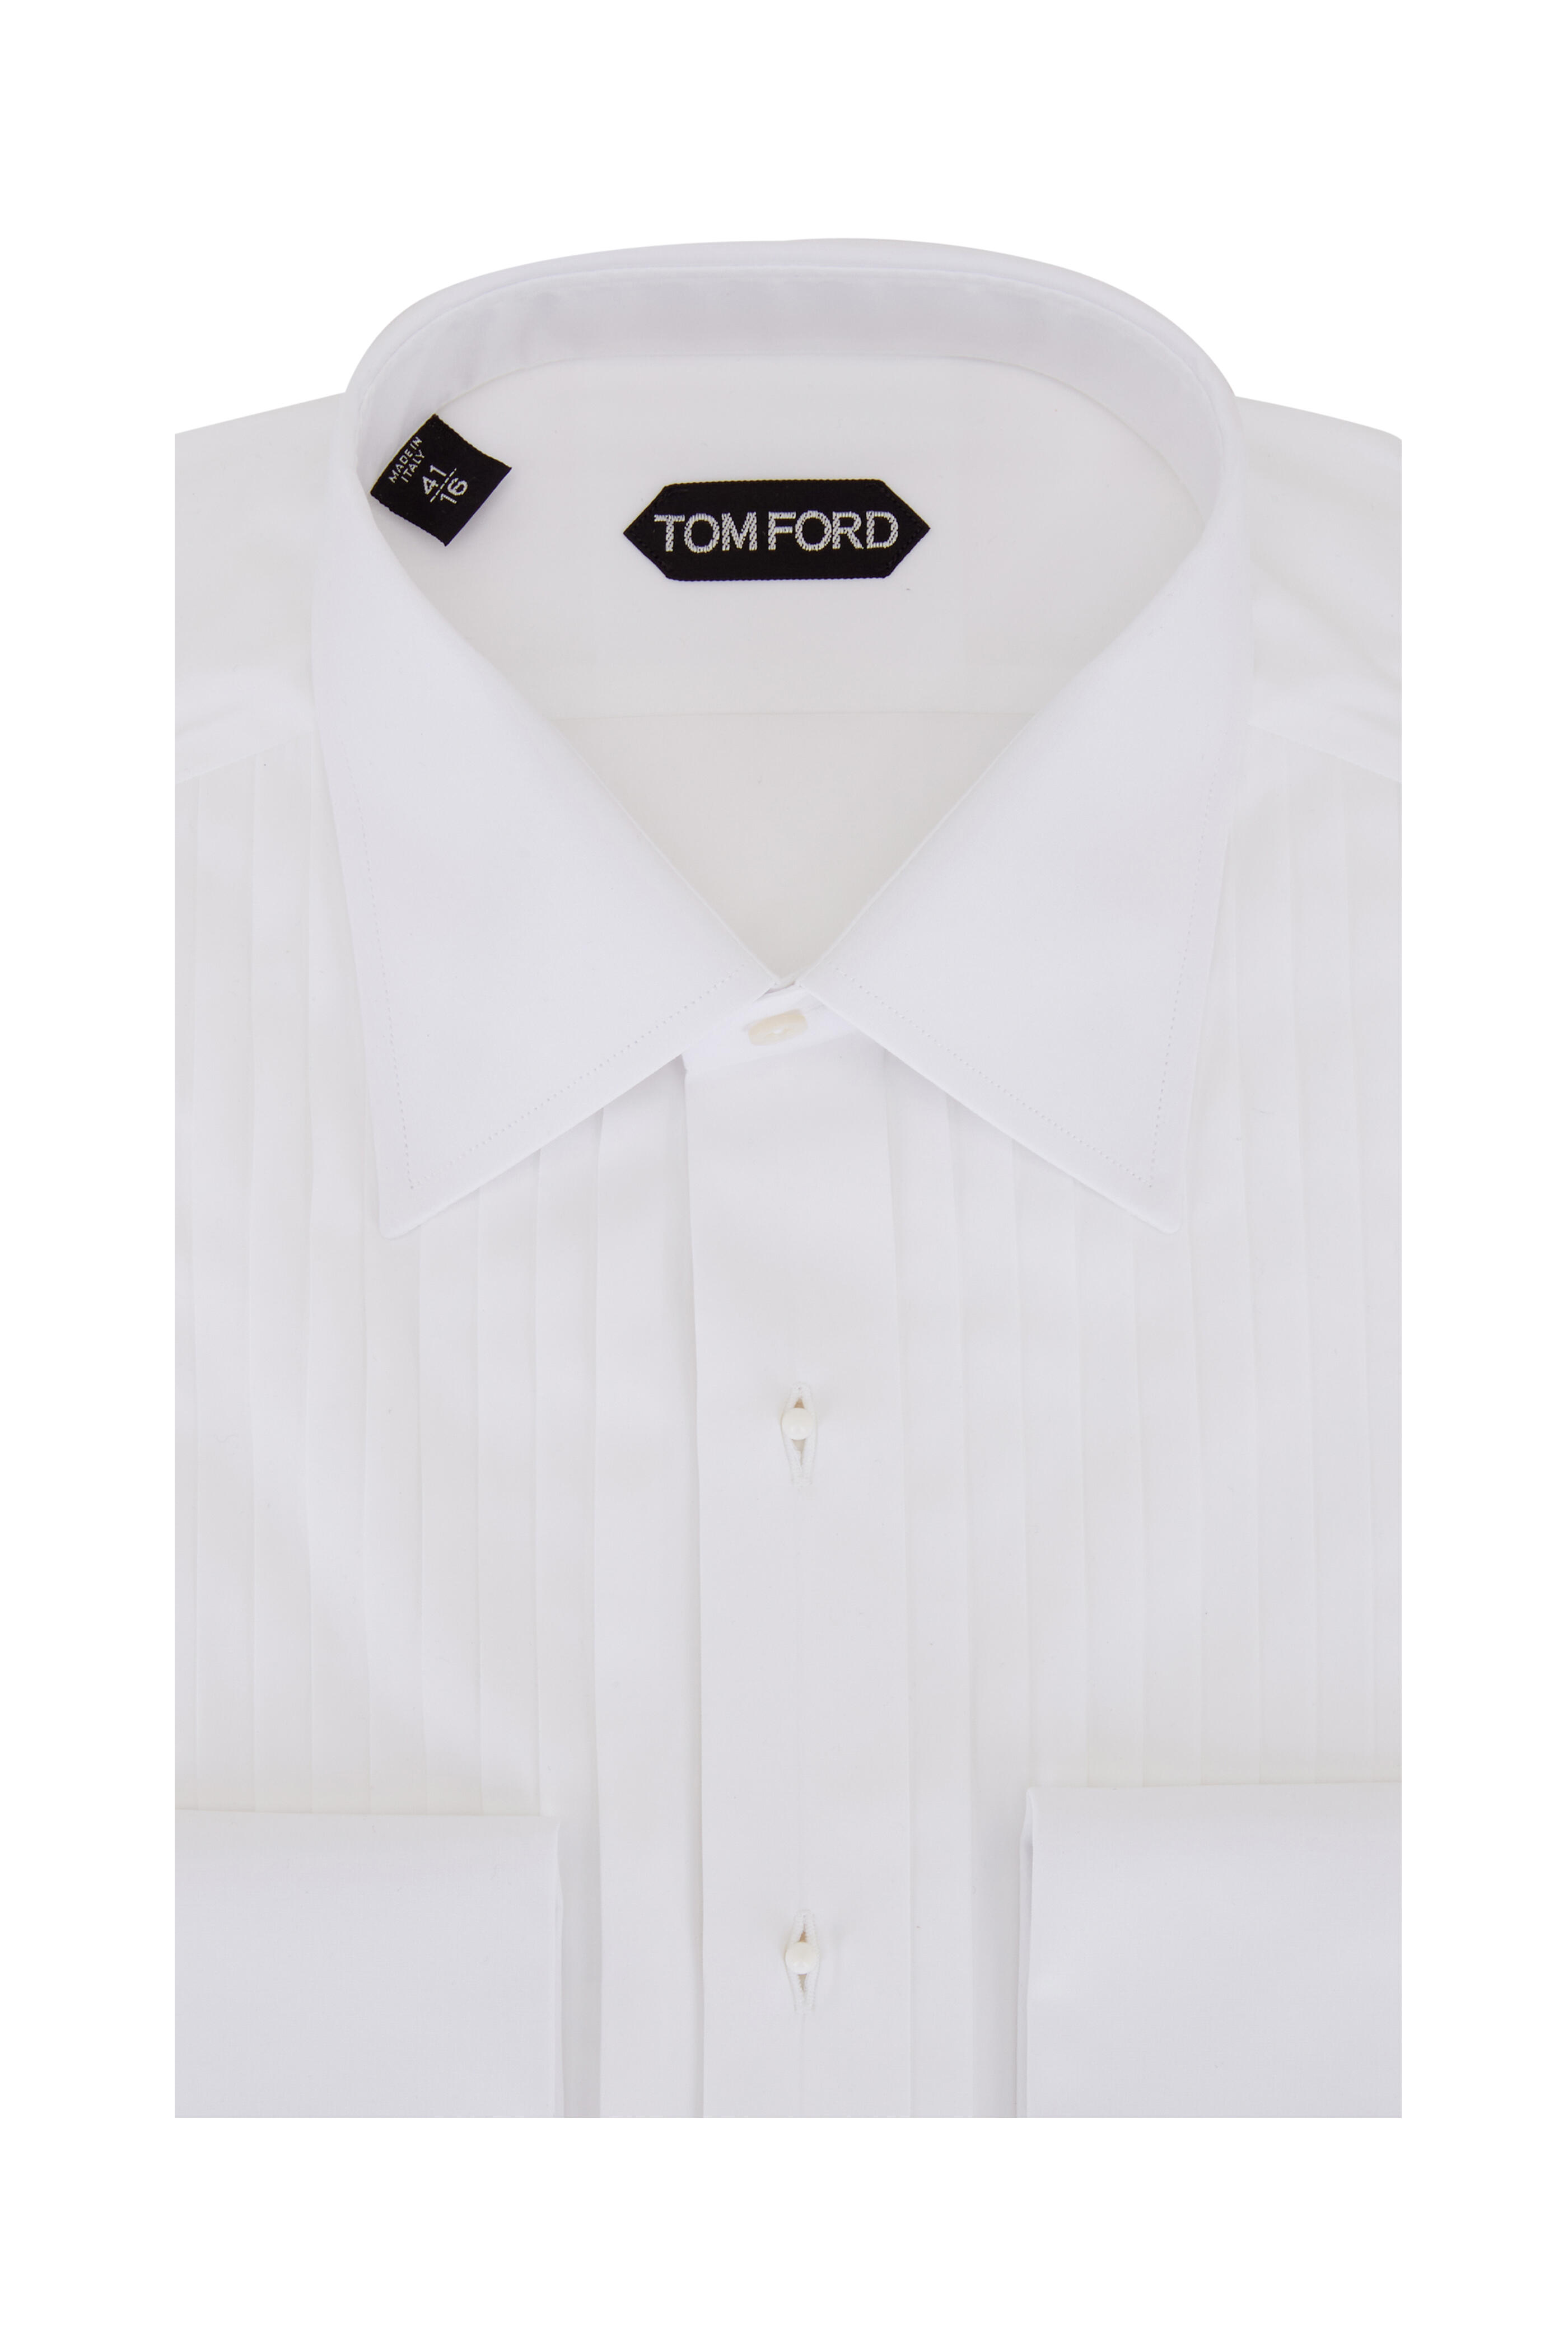 fattigdom Slapper af Kontinent Tom Ford - White Cotton Tuxedo Shirt | Mitchell Stores